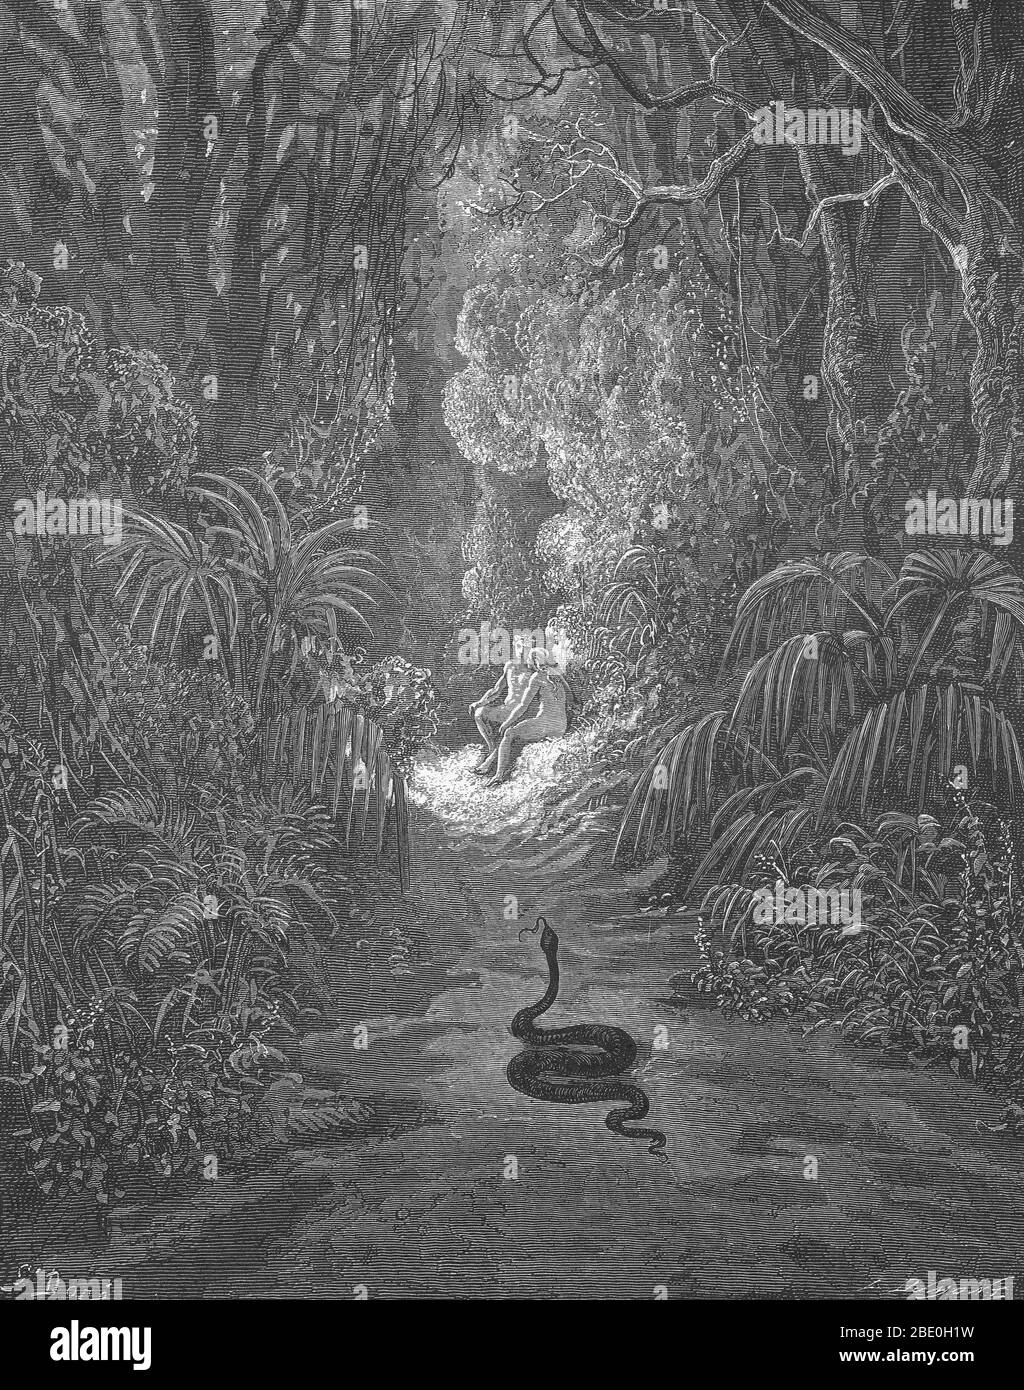 Illustration von Adam und Eva und der Schlange von Gustave Dore für John Miltons Paradise Lost, Buch 9, Zeilen 434-35. Adam und Eva und die Schlange. 'Näher er zog, und viele einen Spaziergang durchquerte / von stateliest verdeckt, Zeder, Kiefer, oder Palme.' Stockfoto